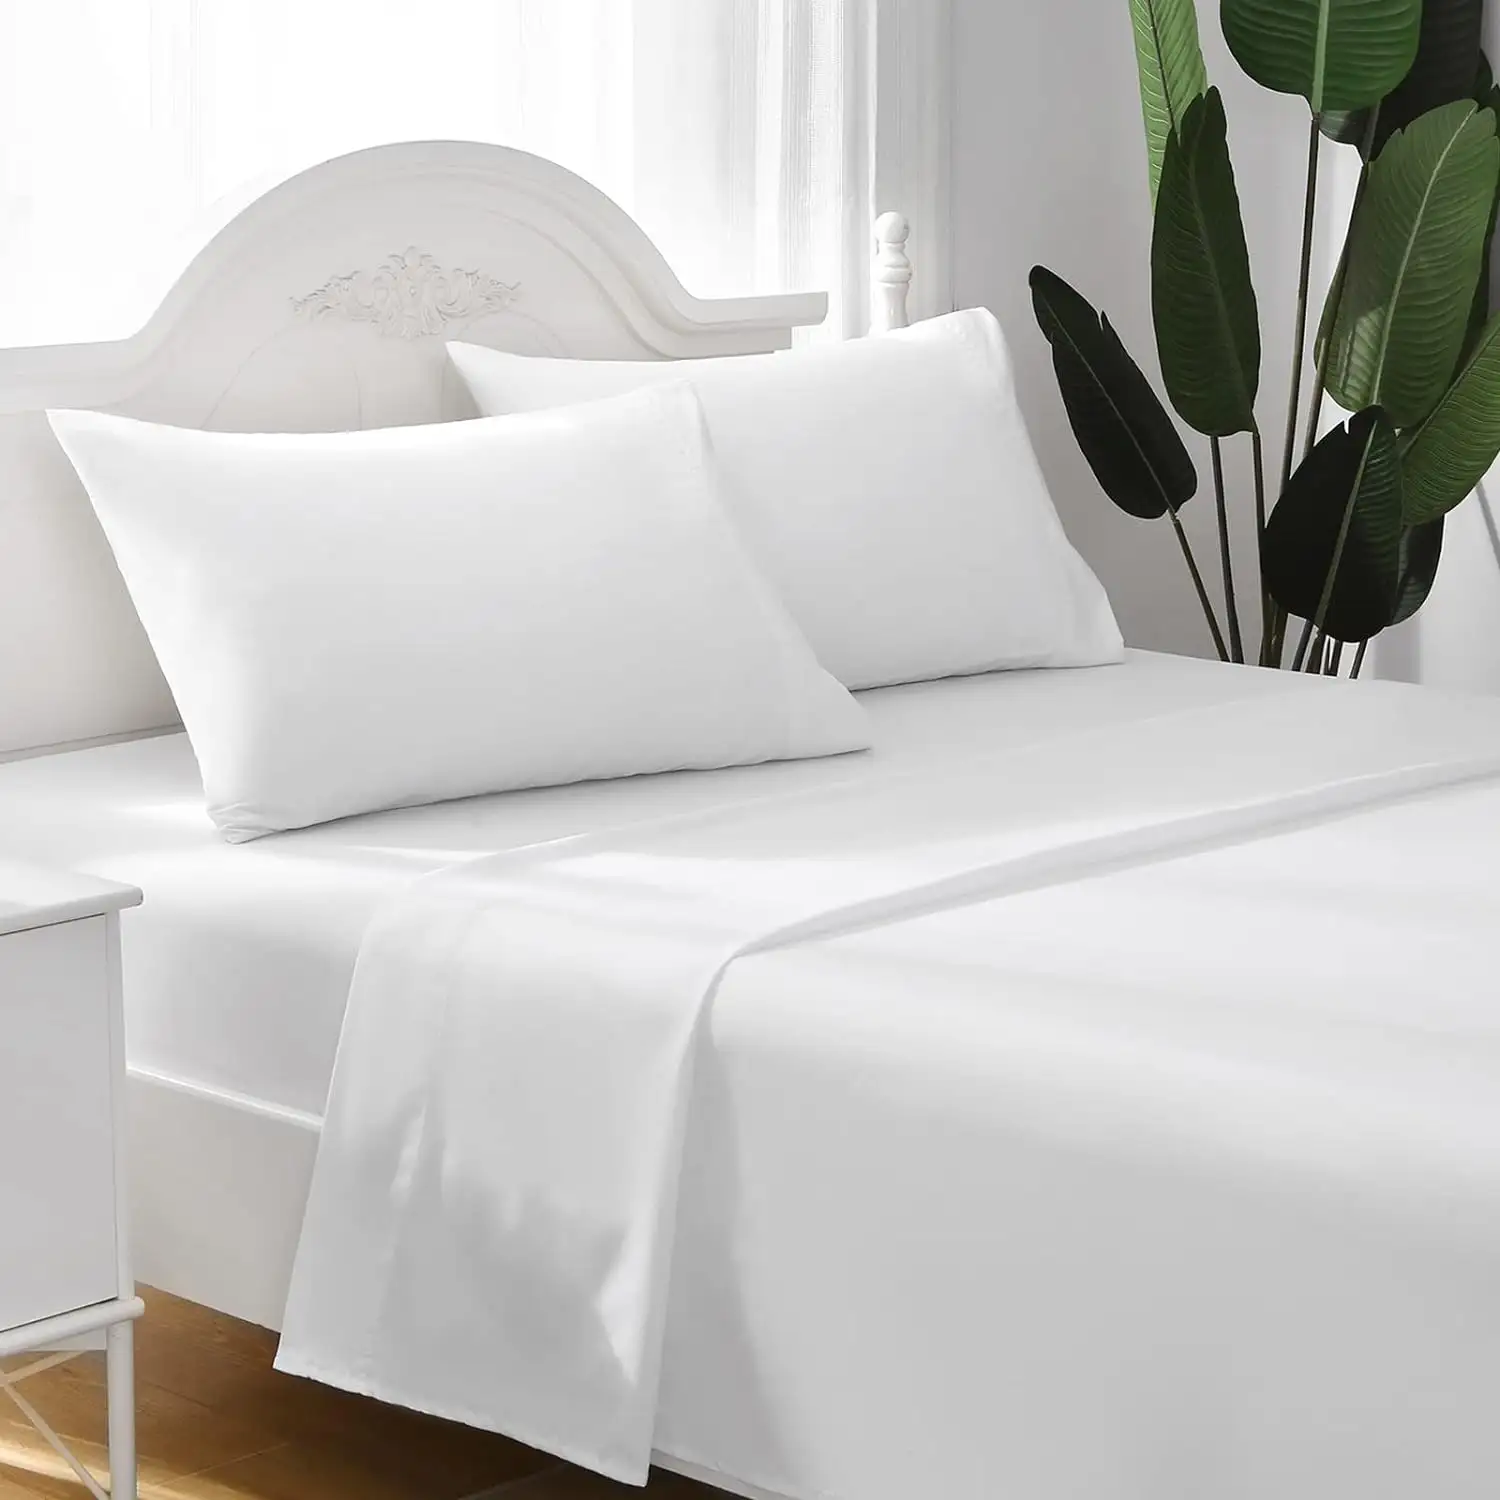 Ropa de cama de microfibra de poliéster 100% de tamaño Queen de EE. UU., 4 Uds., juegos de sábanas para hotel y hogar, juegos de sábanas blancas con sensación de algodón